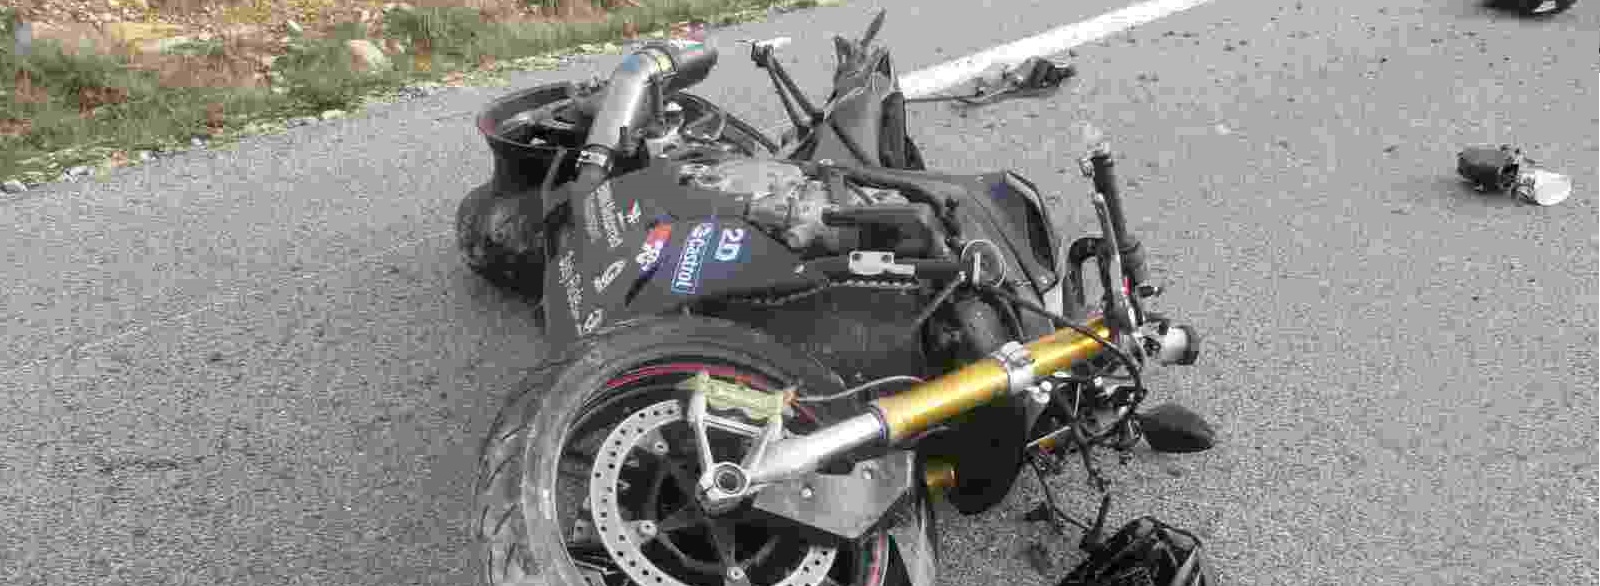 Tunisie – Grombalia : Décès d’un motard dans un accident de la route